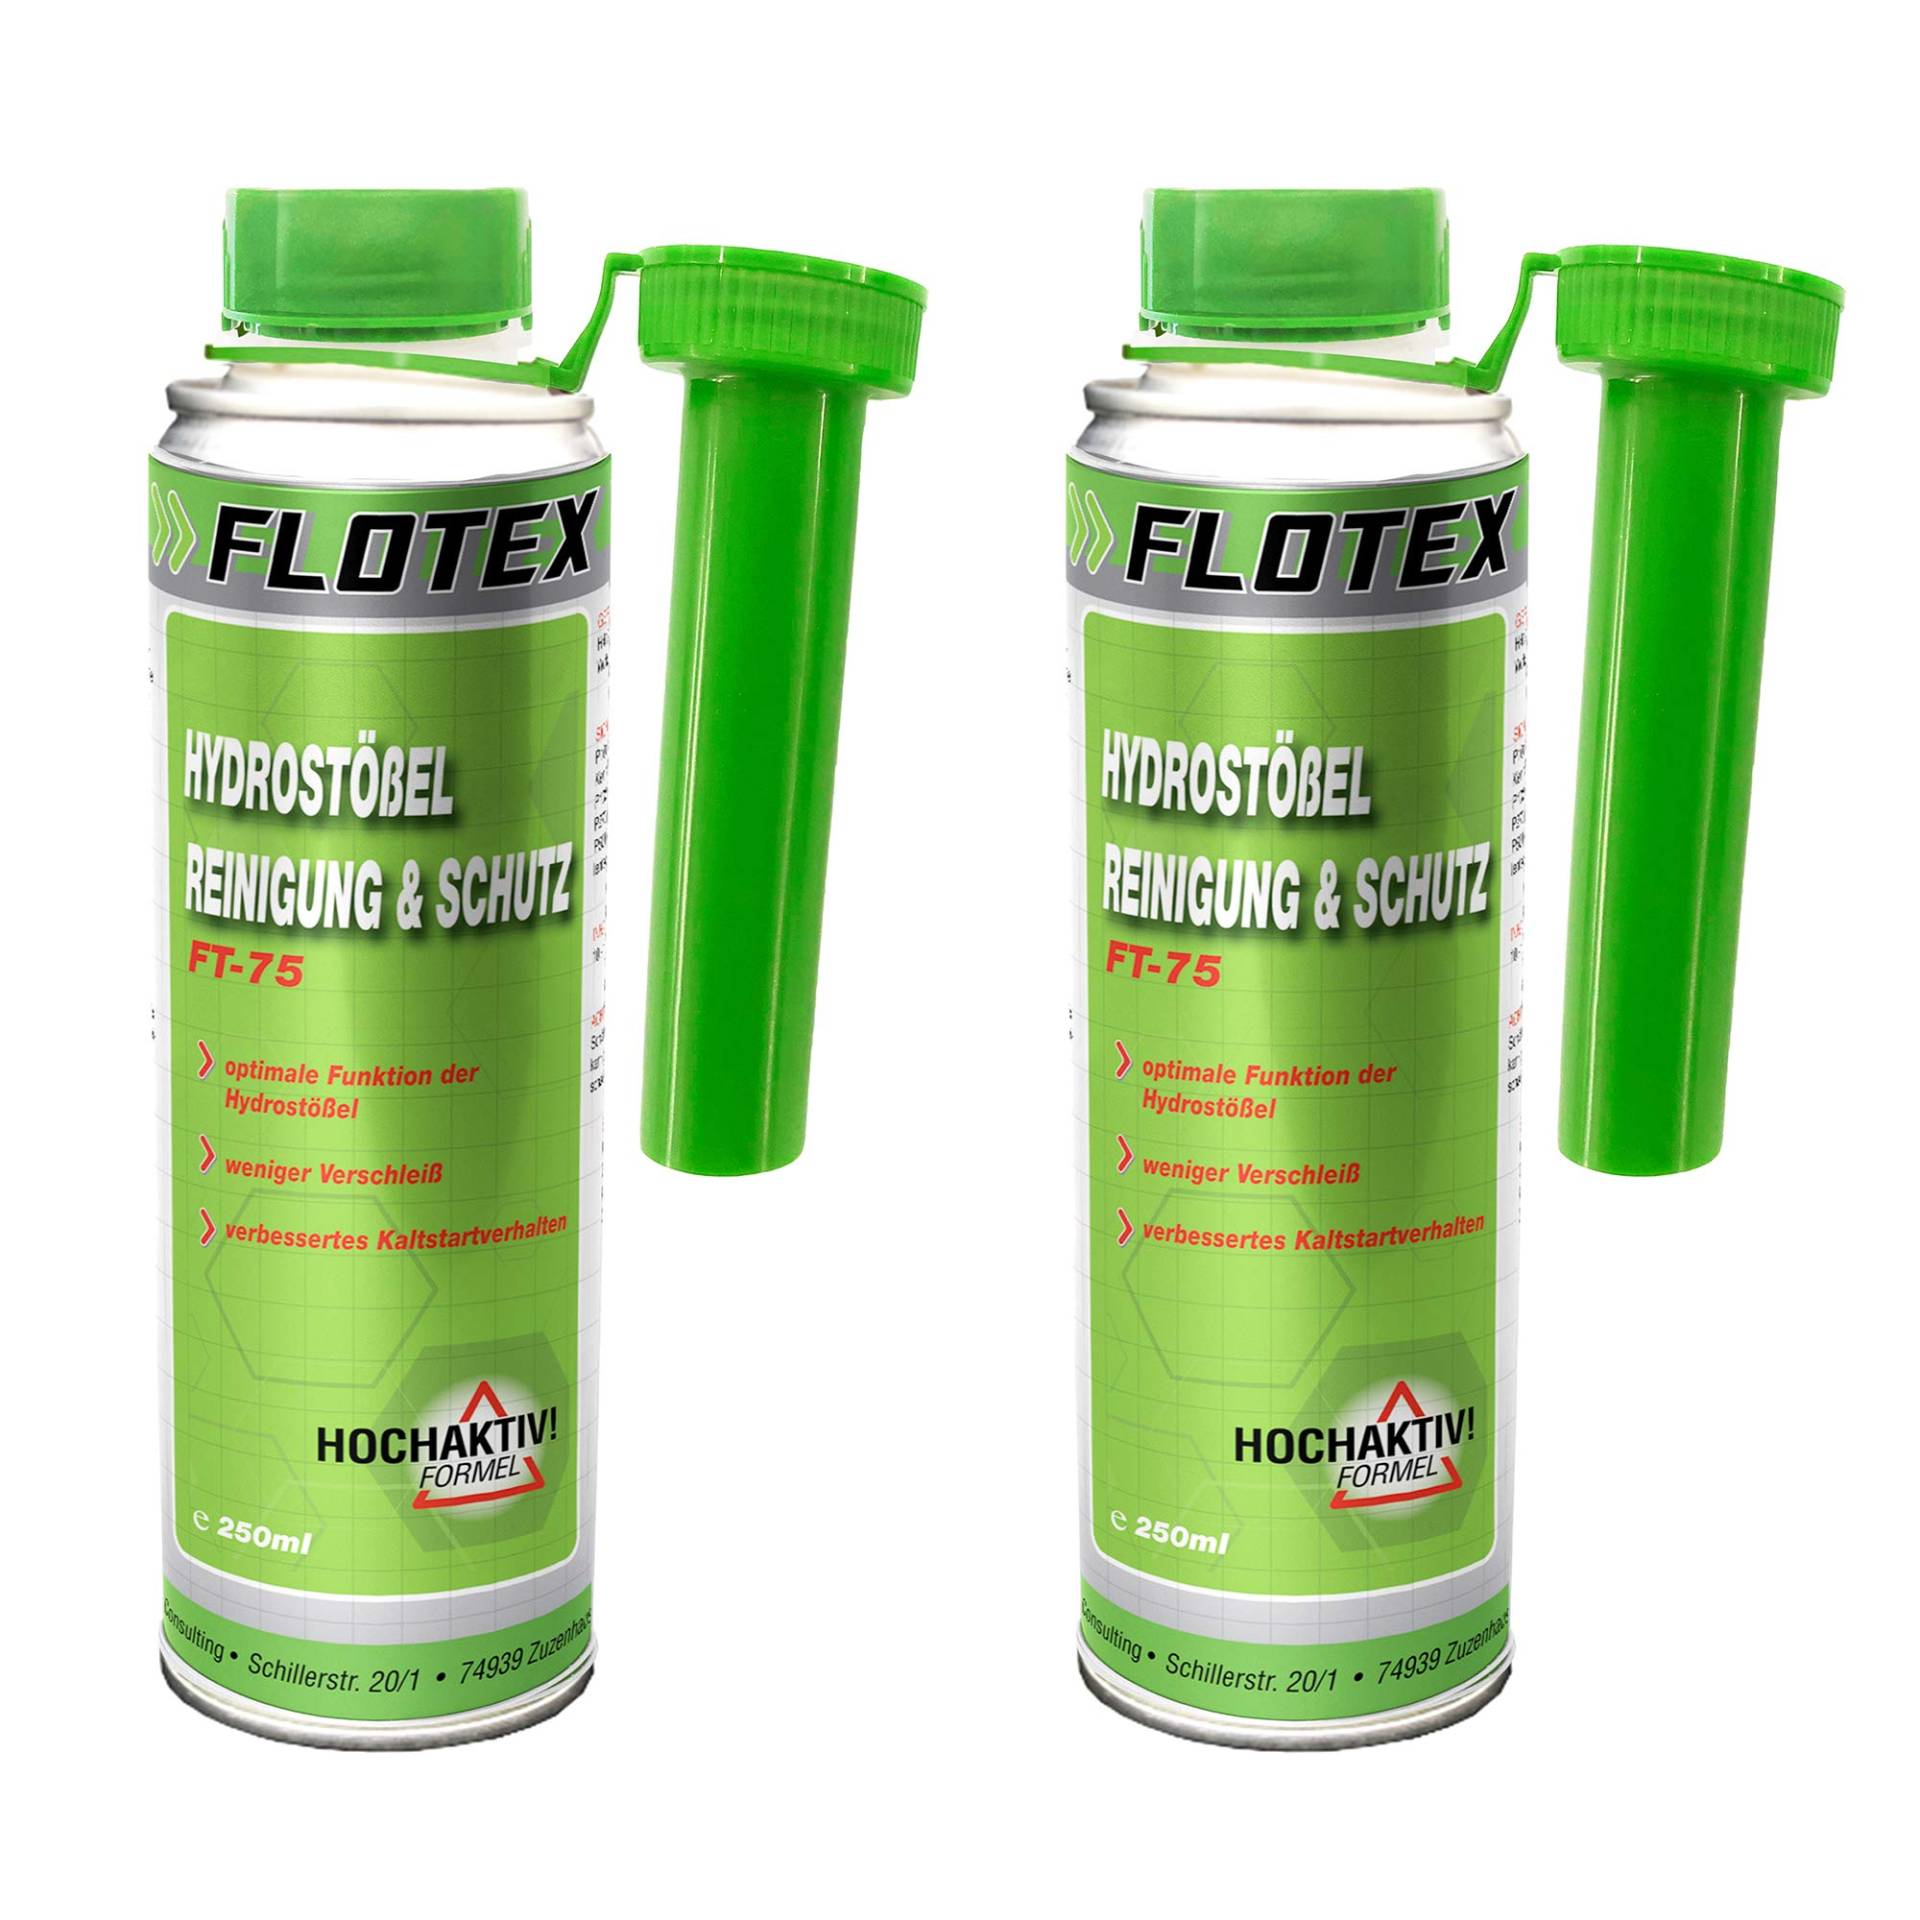 Flotex Hydrostößel Reinigung & Schutz, 2 x 250ml Additiv reinigt Ventilstößel von Flotex